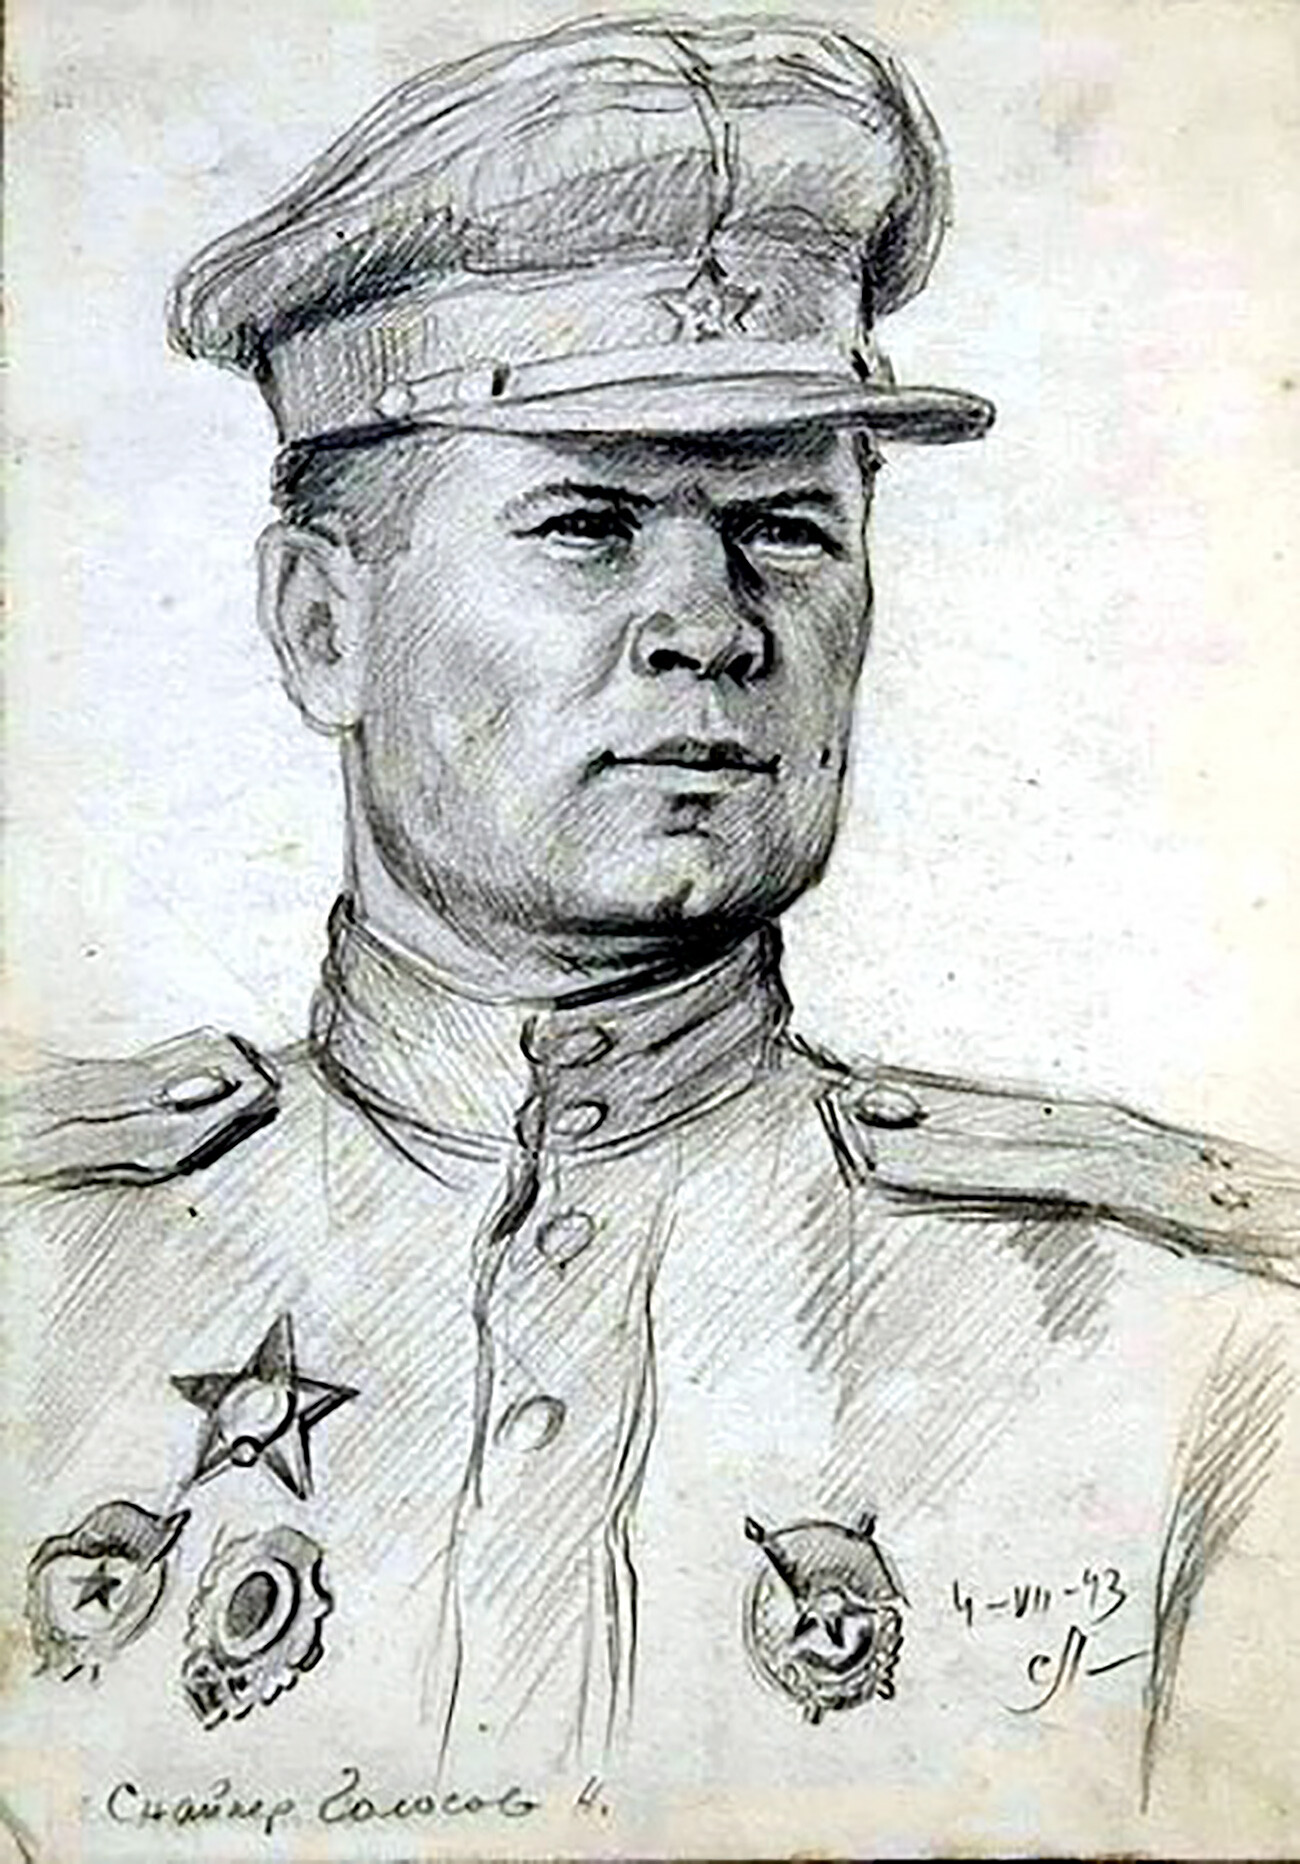 Vasili Golosov